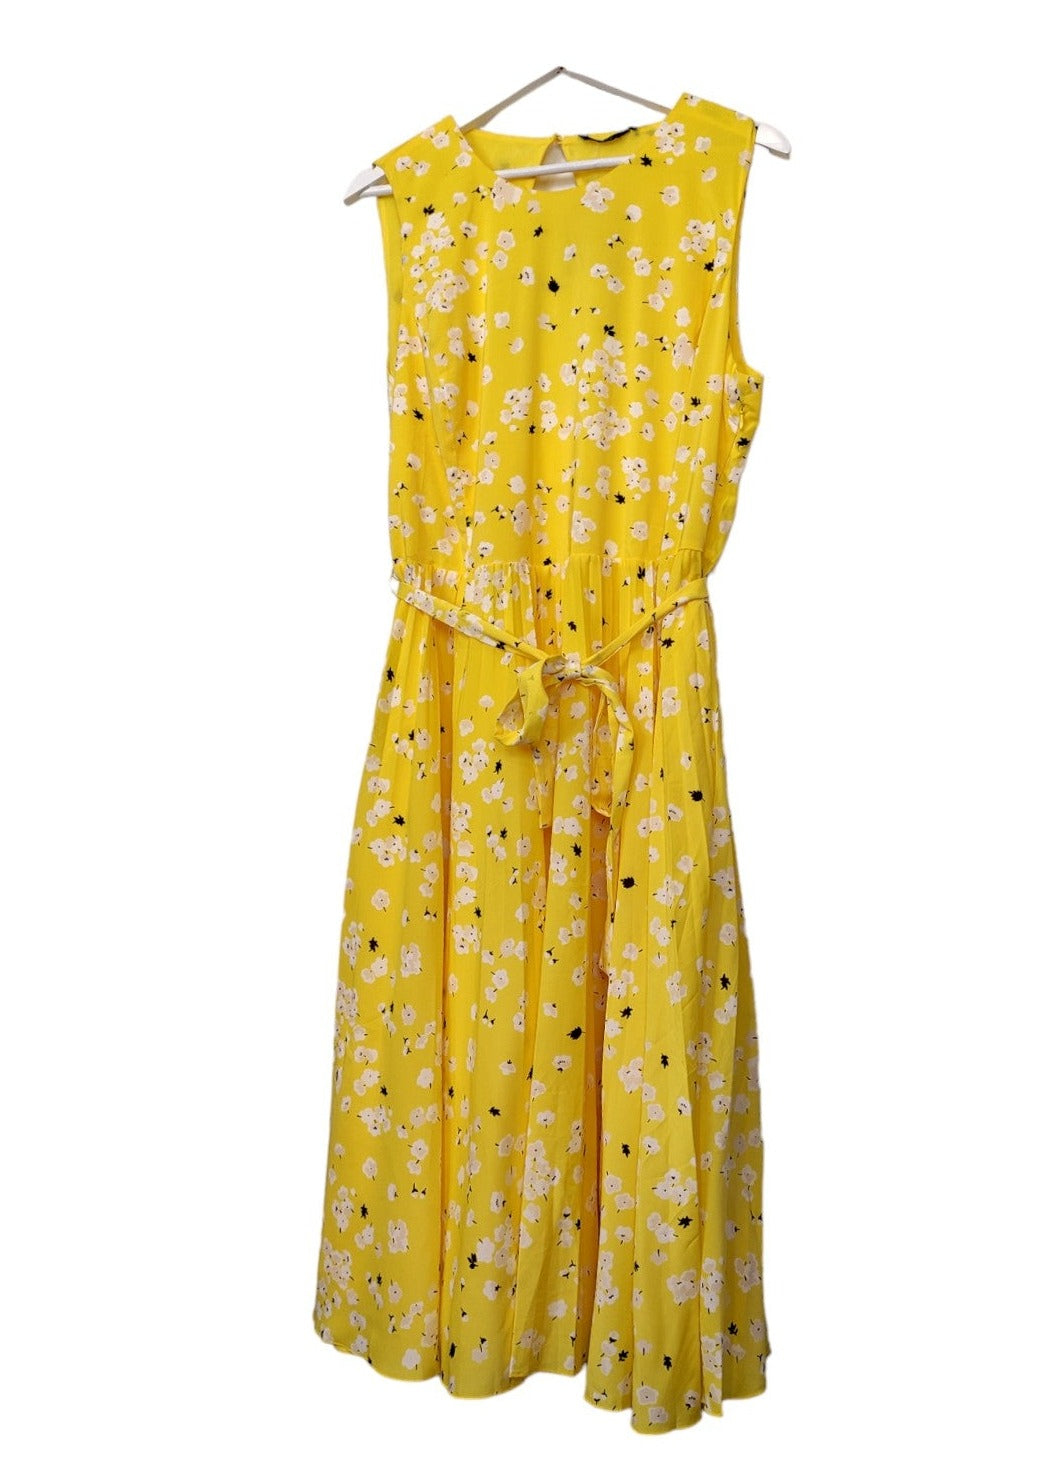 Φλοράλ, Αμάνικο, Φόρεμα YESSICA PREMIUM σε Κίτρινο Χρώμα (Large)